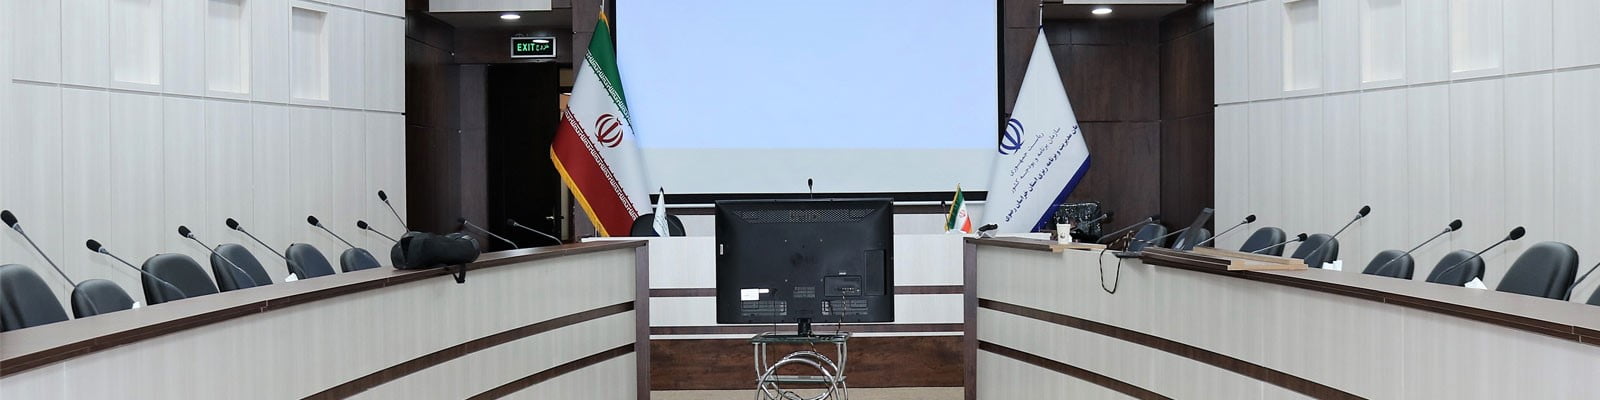 فروش تجهیزات کنفرانس در مشهد